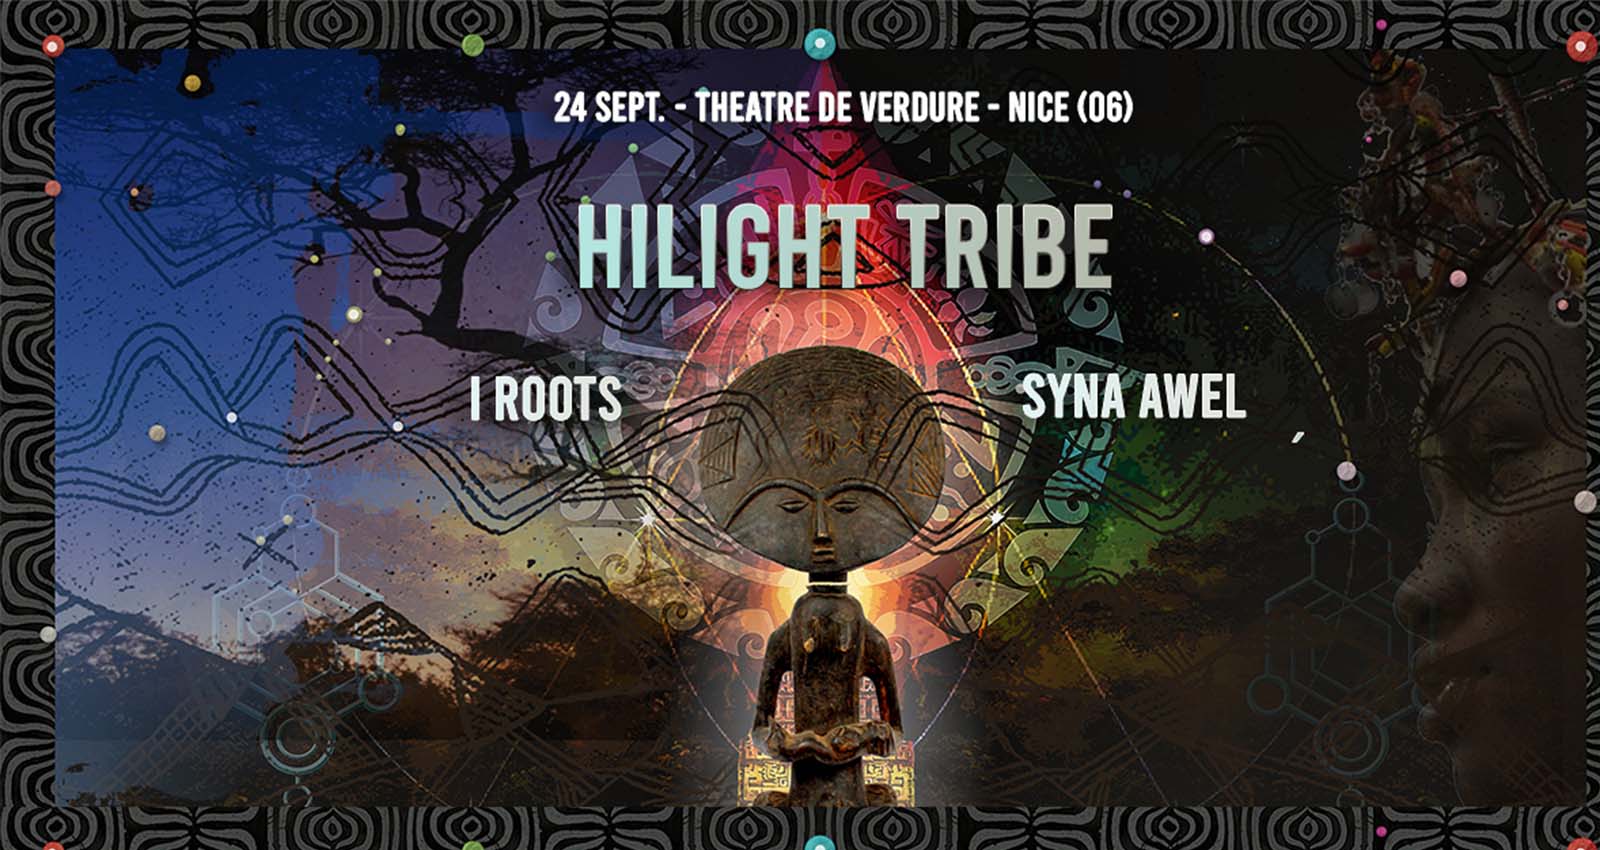 Affiche du concert d'Hilight Tribe à Nice